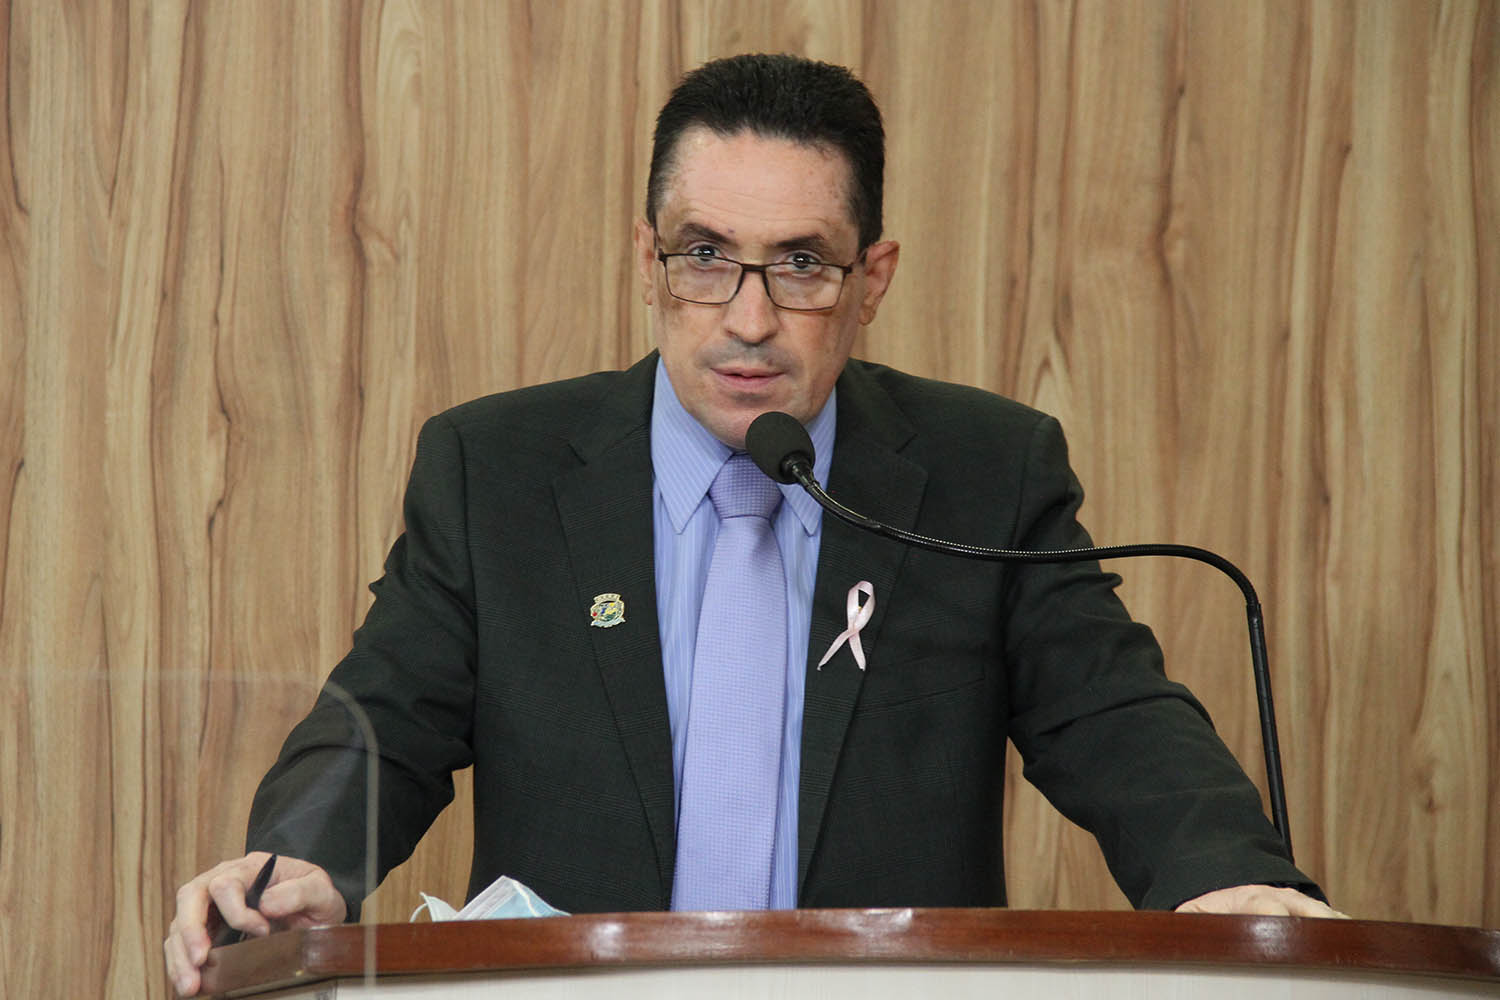 #PraCegoVer: Foto mostra o vereador Fábio Damasceno discursando na tribuna da Câmara.